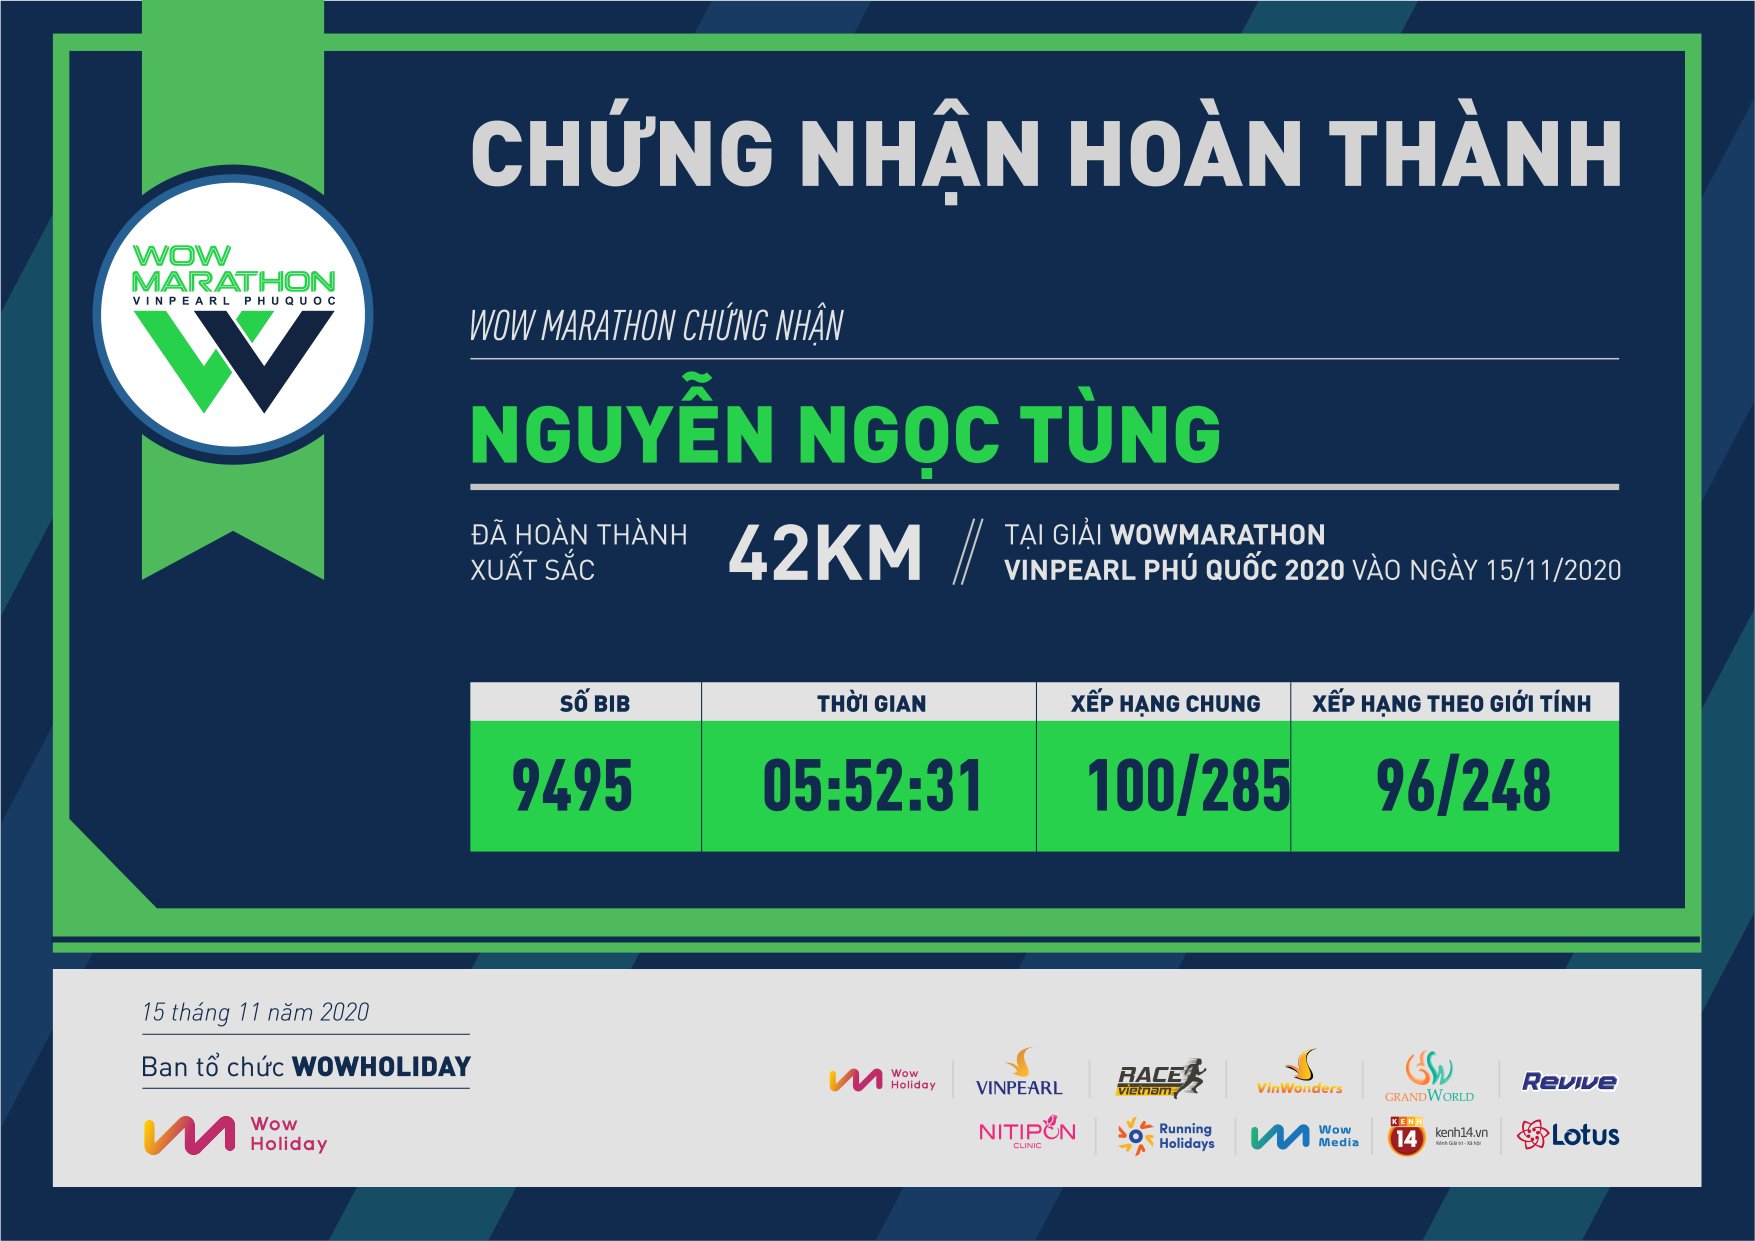 9495 - Nguyễn Ngọc Tùng